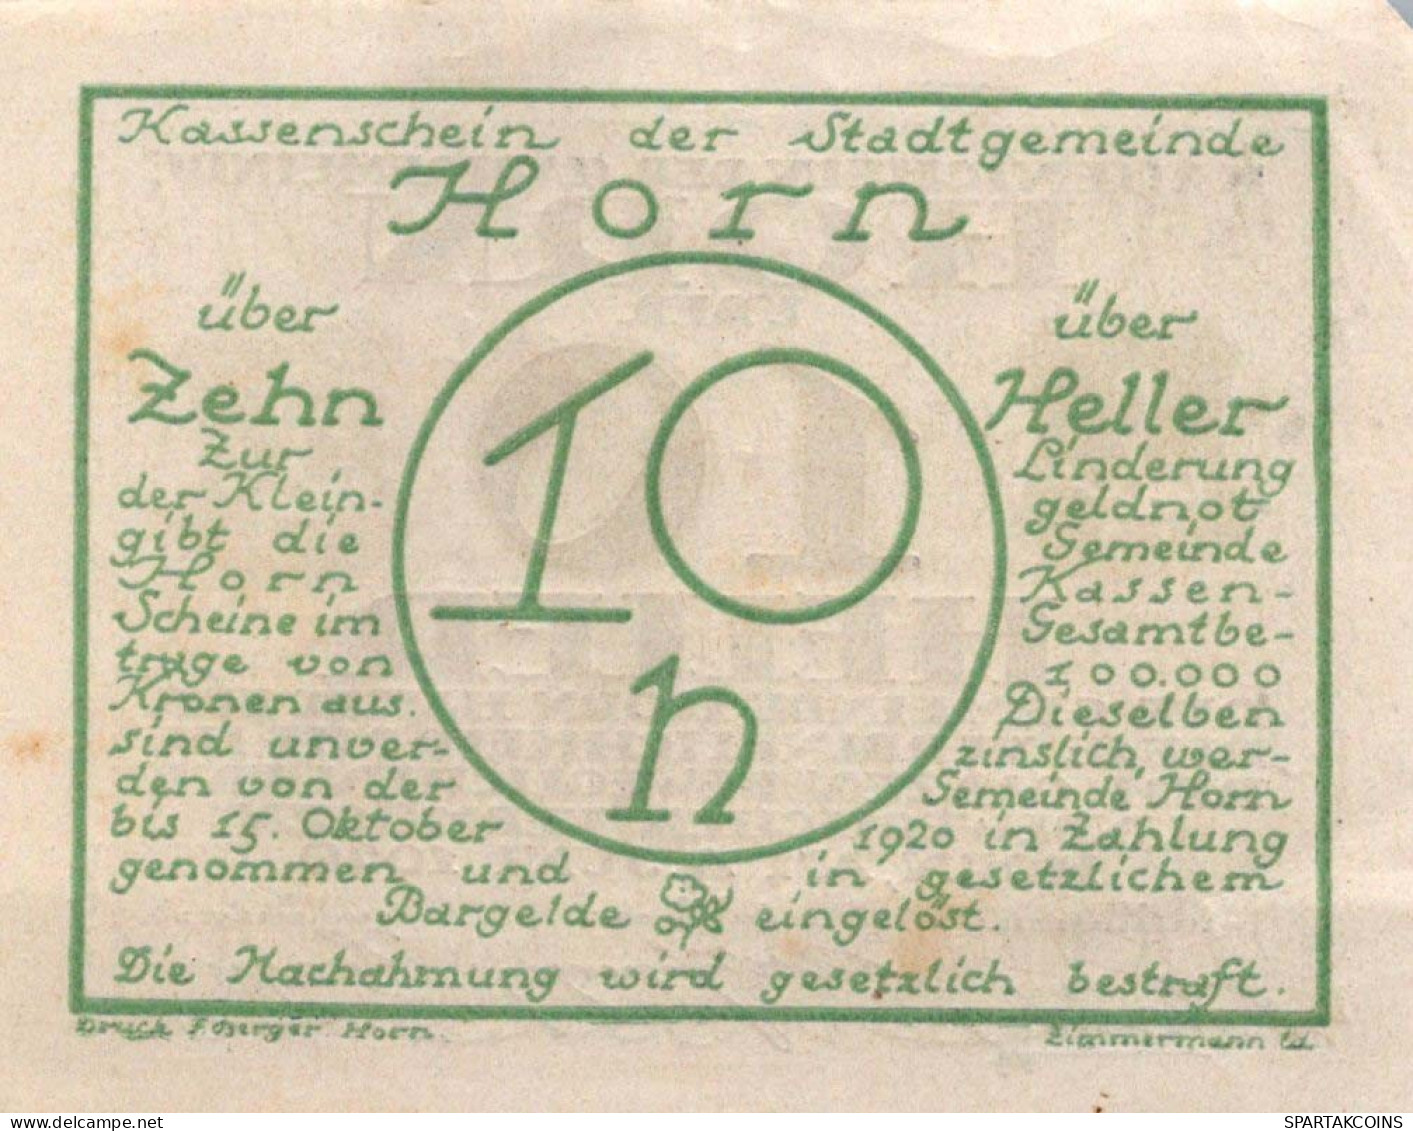 10 HELLER 1920 Stadt HORN Niedrigeren Österreich Notgeld Banknote #PD630 - [11] Emissioni Locali